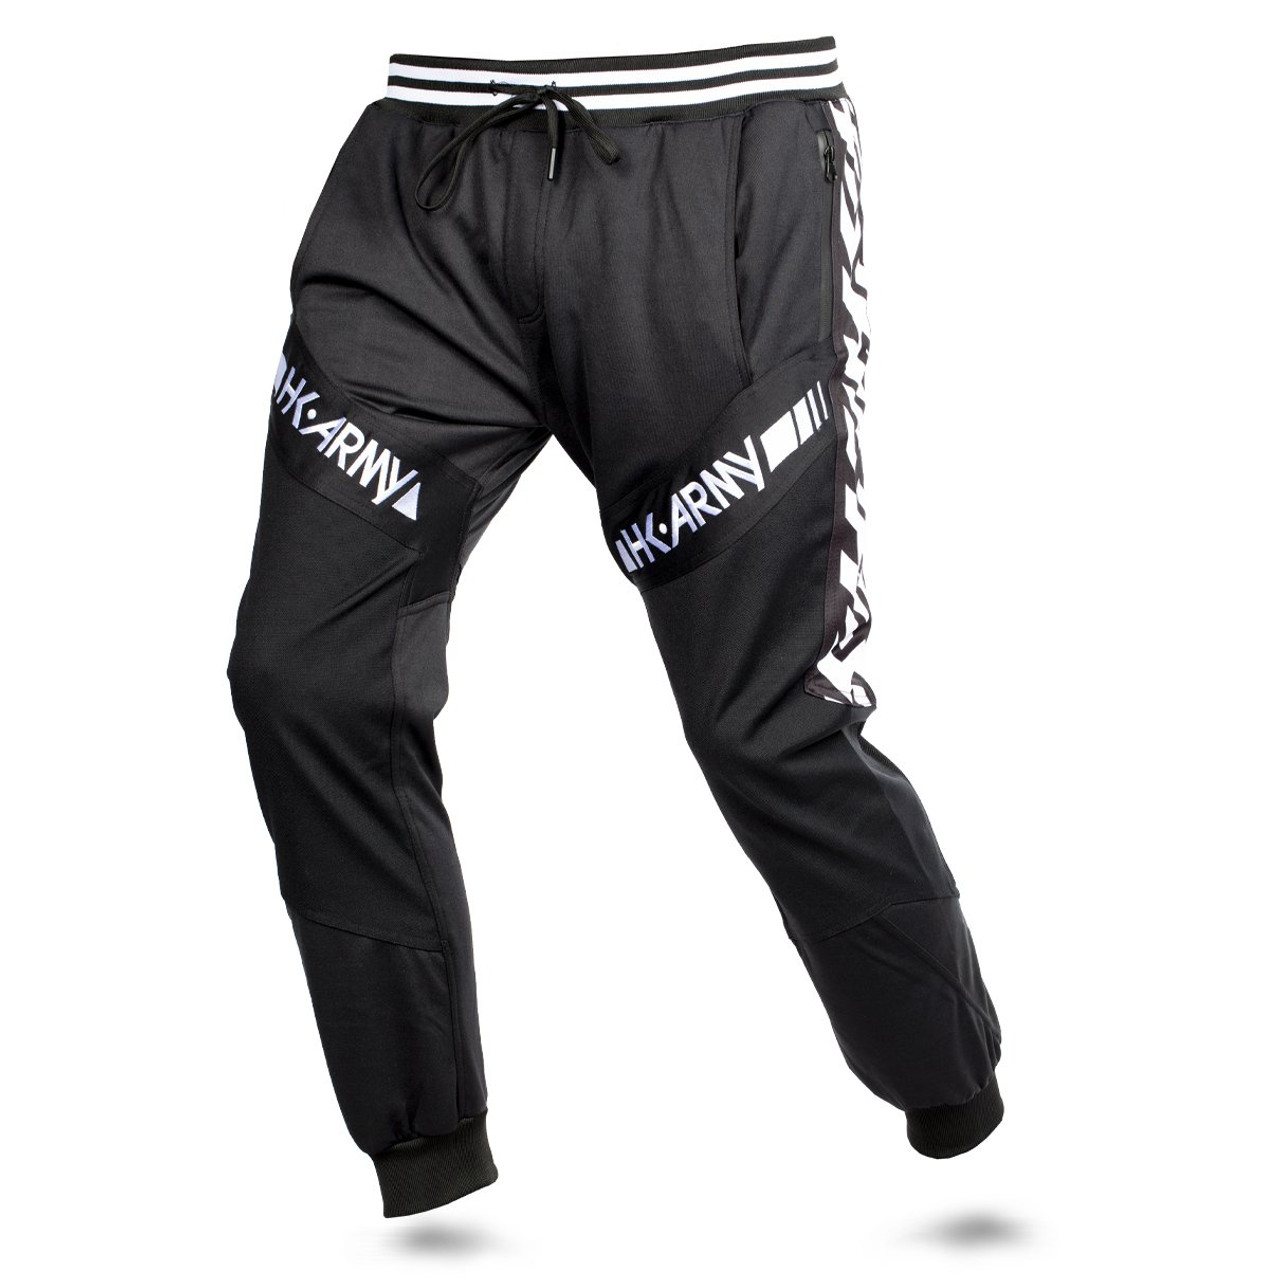 HK - TRK Jogger Pants - Retro Stripe Black - Paintballshop.com